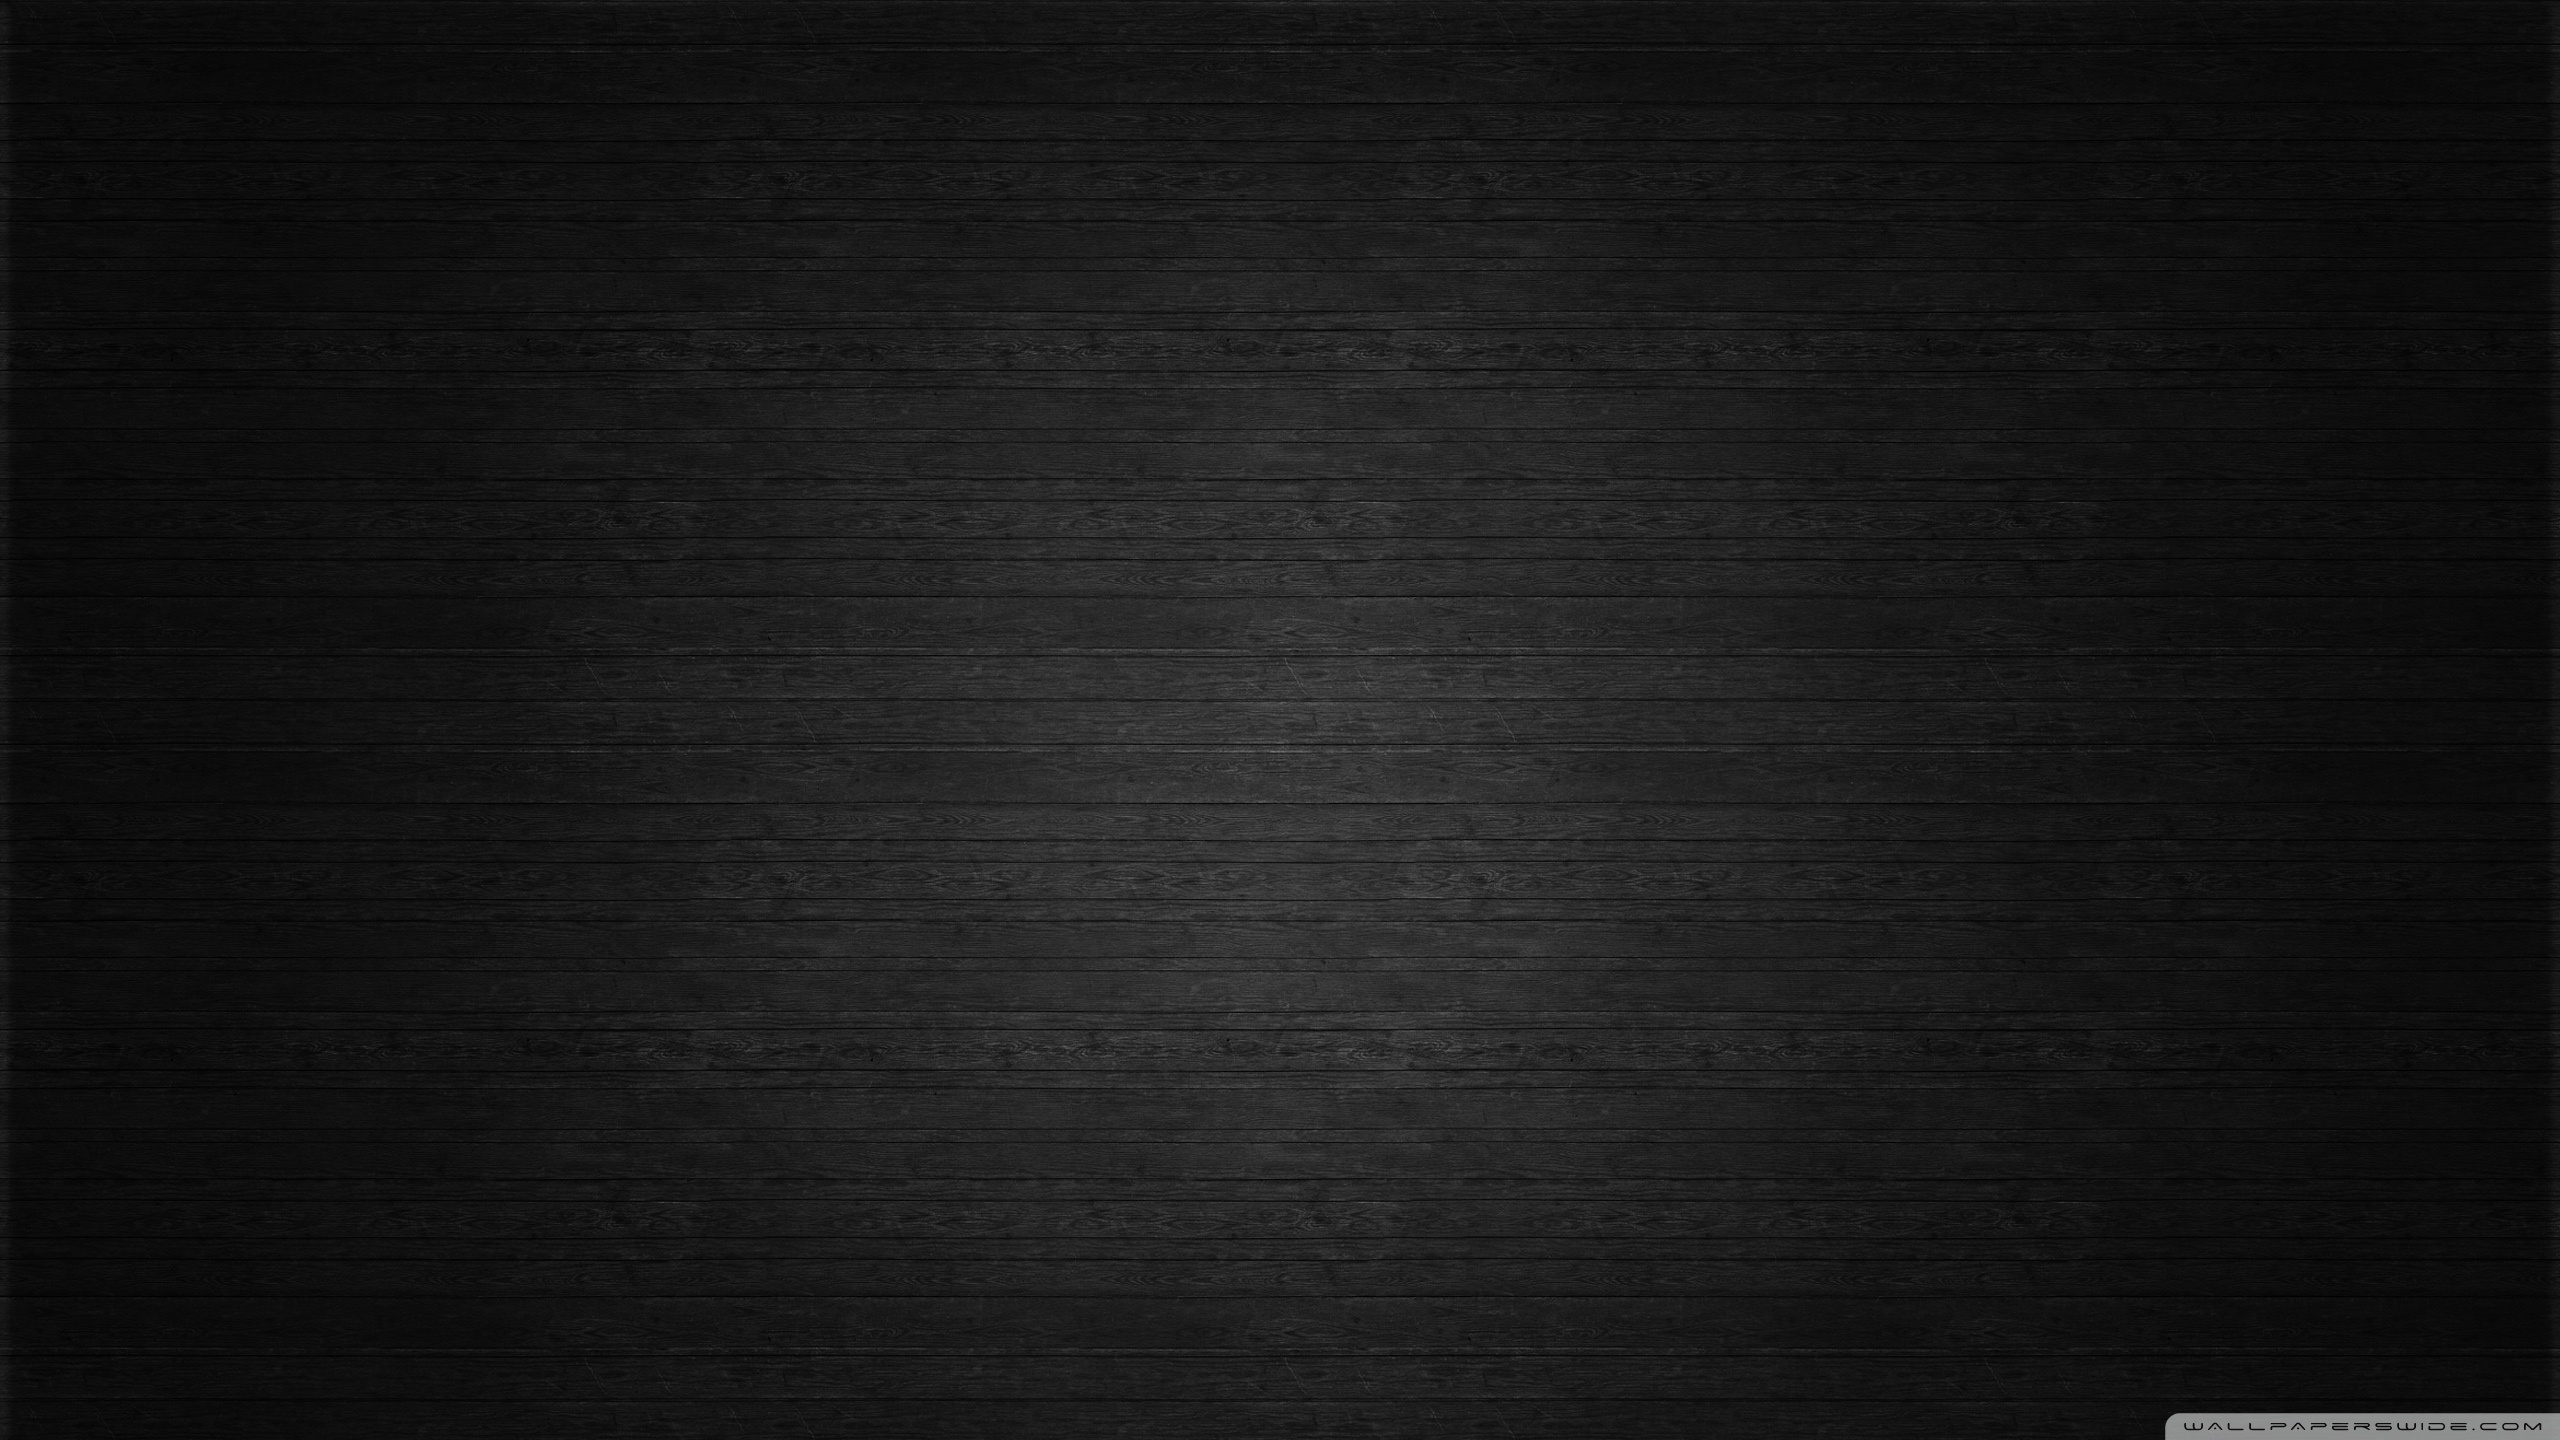 schwarze tapete hd,schwarz,schwarz und weiß,muster,dunkelheit,monochrome fotografie